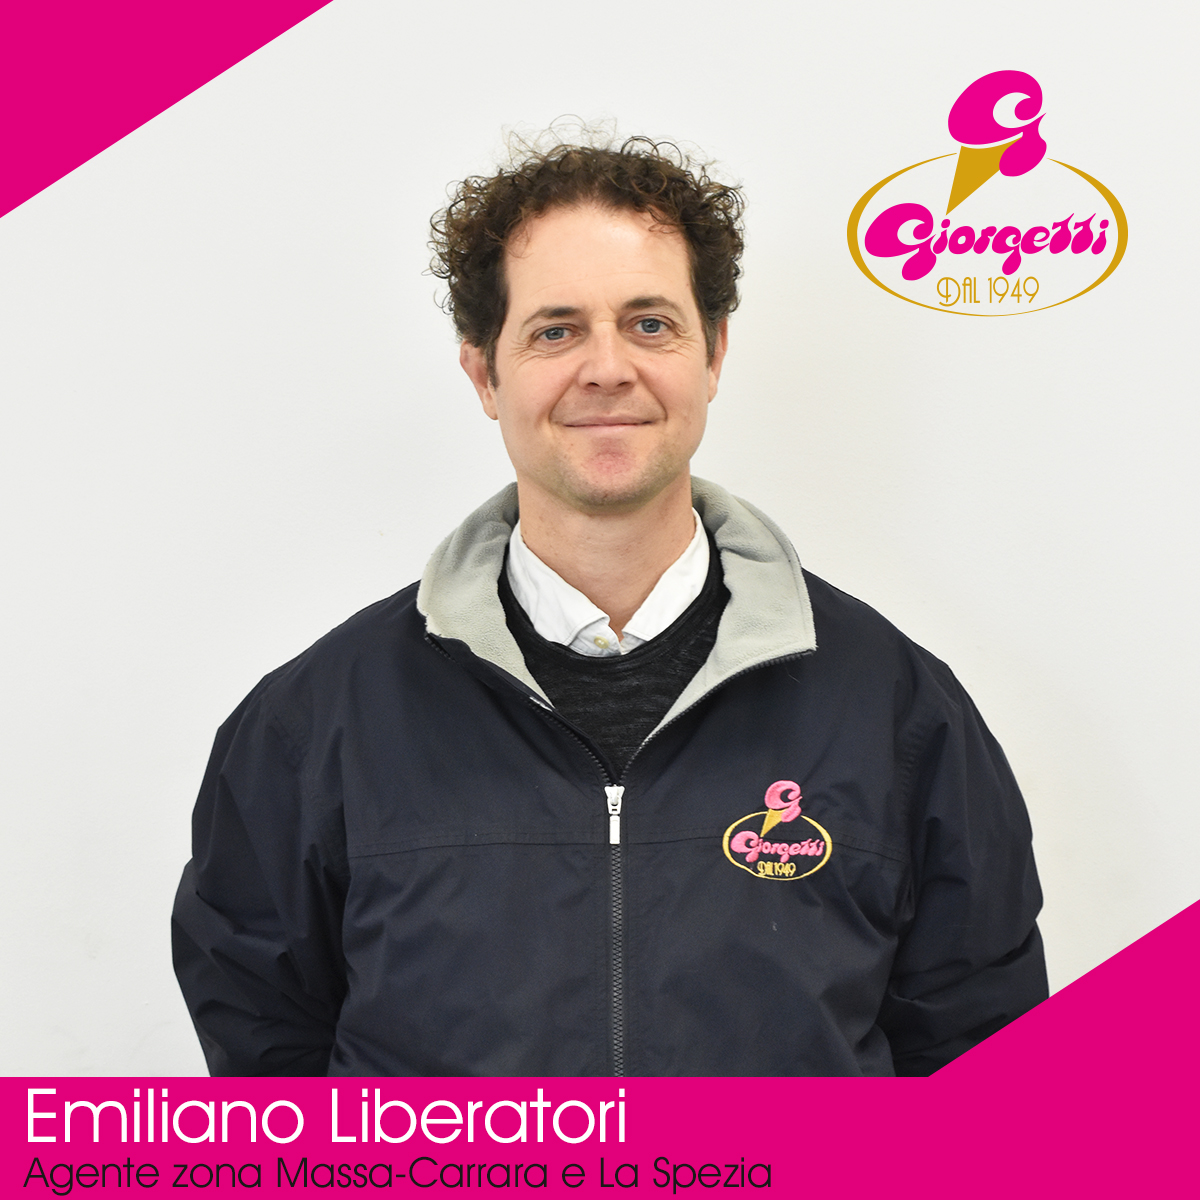 Emiliano Liberatori